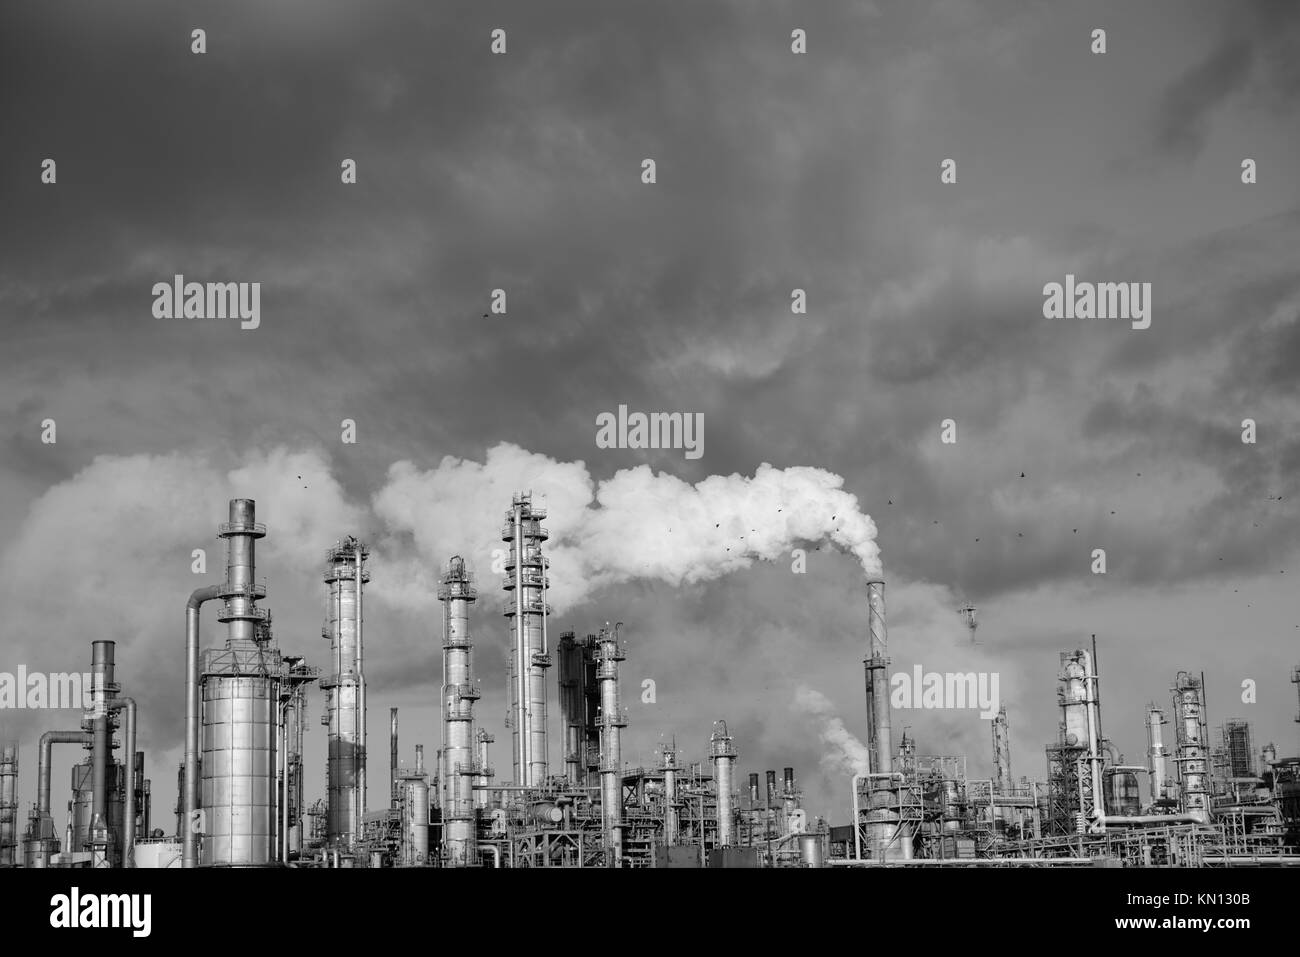 Raffinerie pétrochimique industrielle, panaches d'émissions provenant des tours de cheminées d'une raffinerie de pétrole et de gaz à Corpus Christi, Texas, États-Unis Banque D'Images